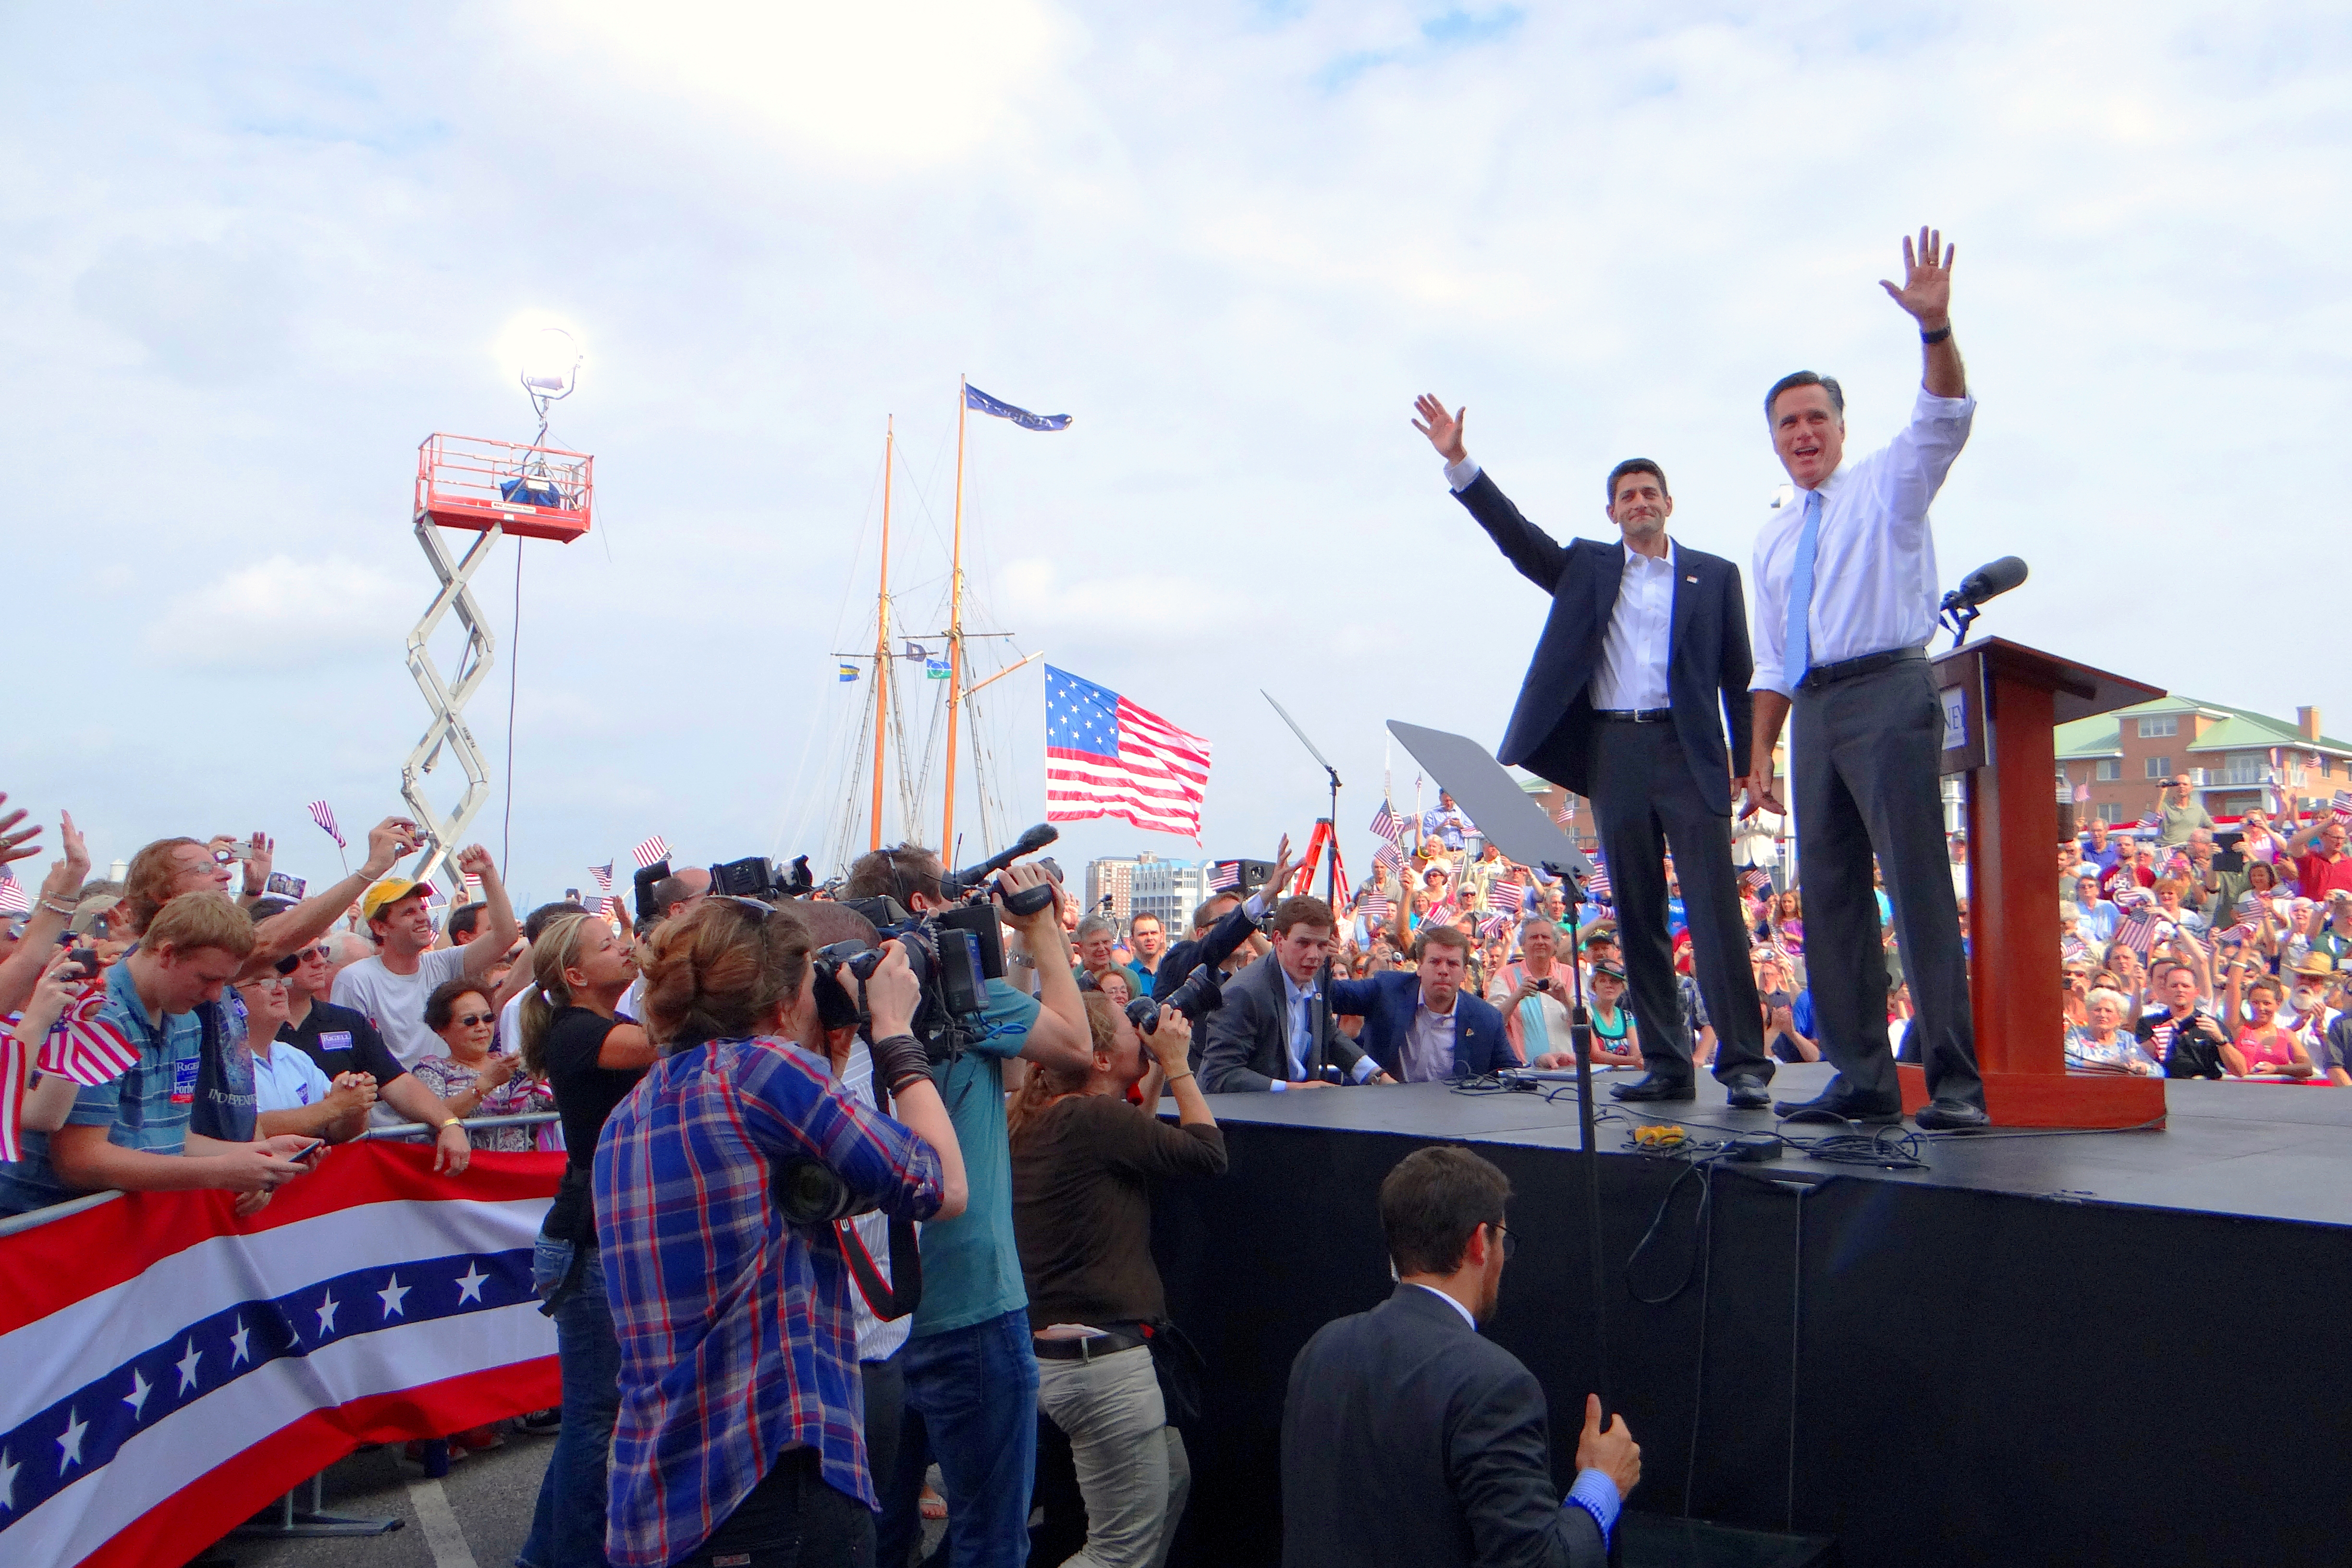 ميت رومني وريان بعد اختياره له لخوص انتخابات على منصب نائب الريس في انتخابات 2012، نورفولك، ڤيرجينيا، 11 أغسطس 2012.